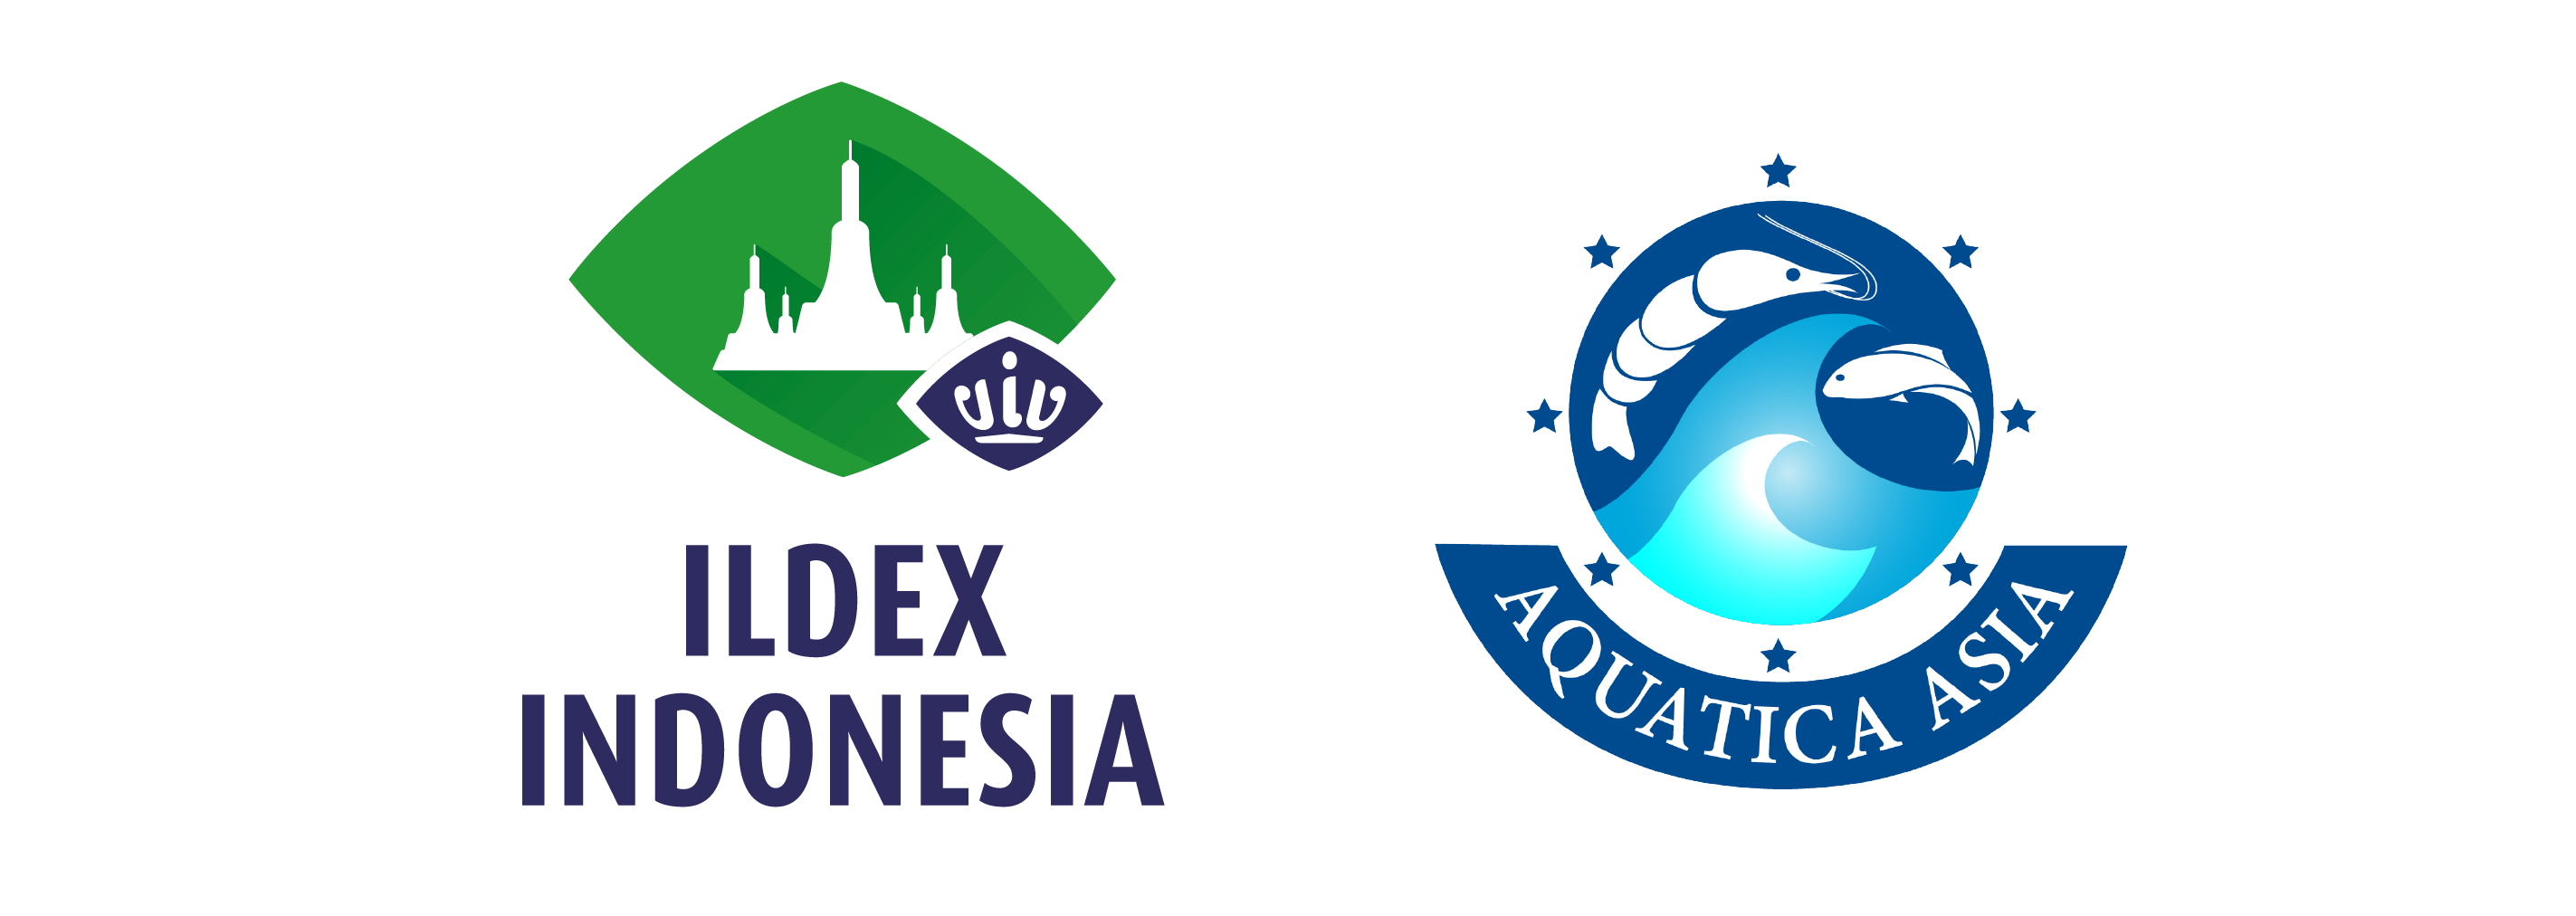 POSTPONEMENT OF ILDEX INDONESIA 2021 AND AQUATICA ASIA ...